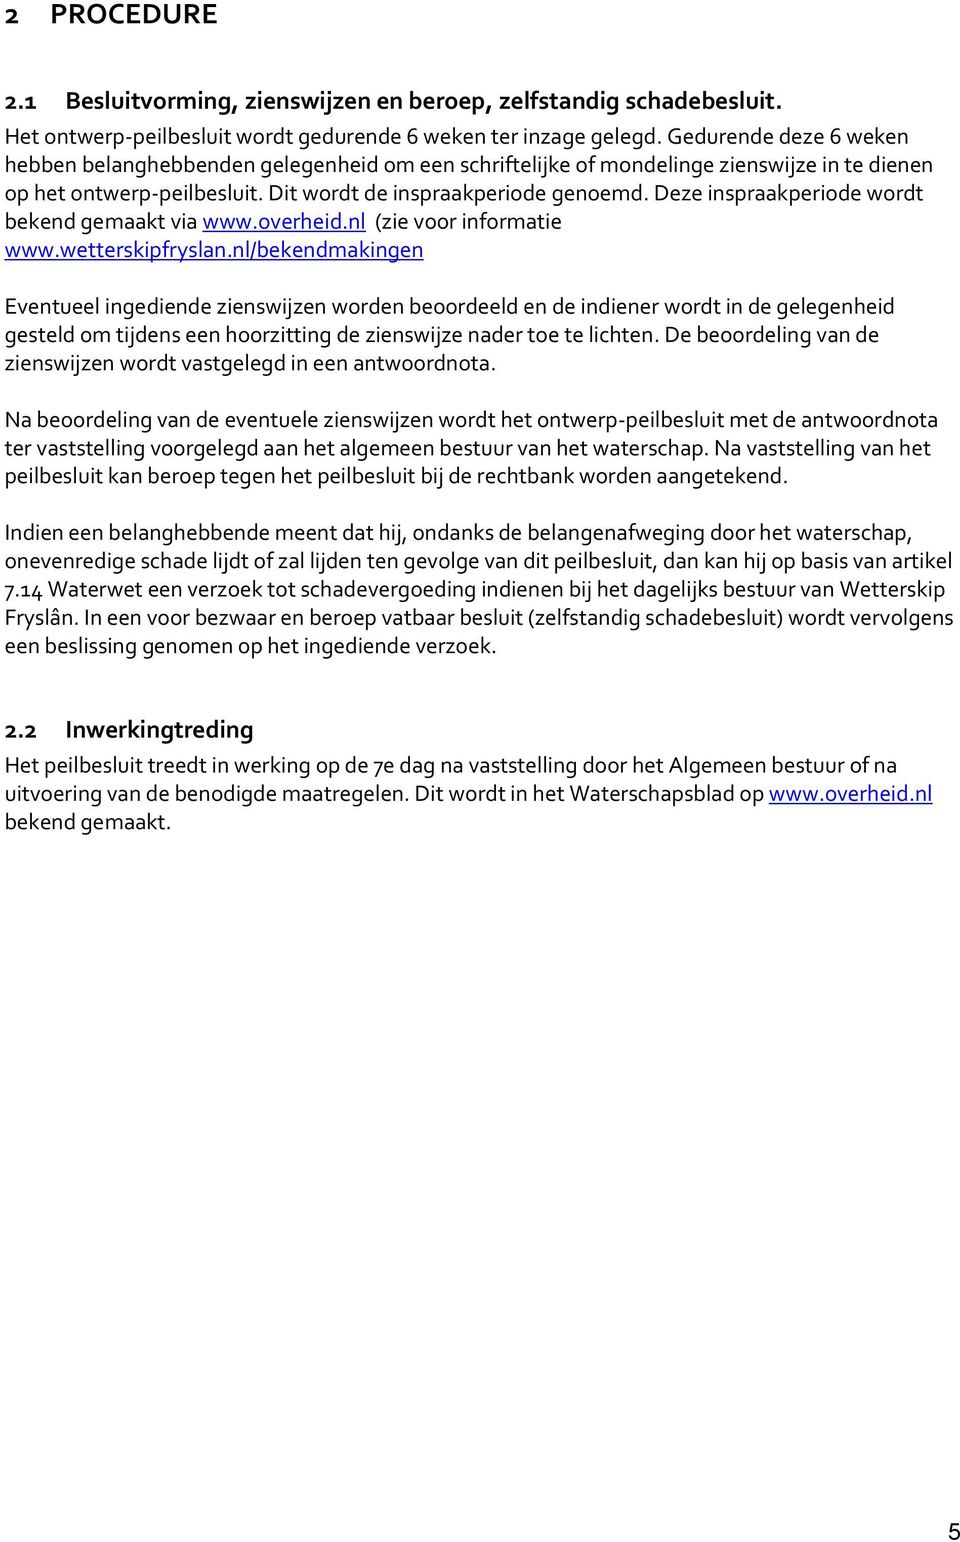 Deze inspraakperiode wordt bekend gemaakt via www.overheid.nl (zie voor informatie www.wetterskipfryslan.